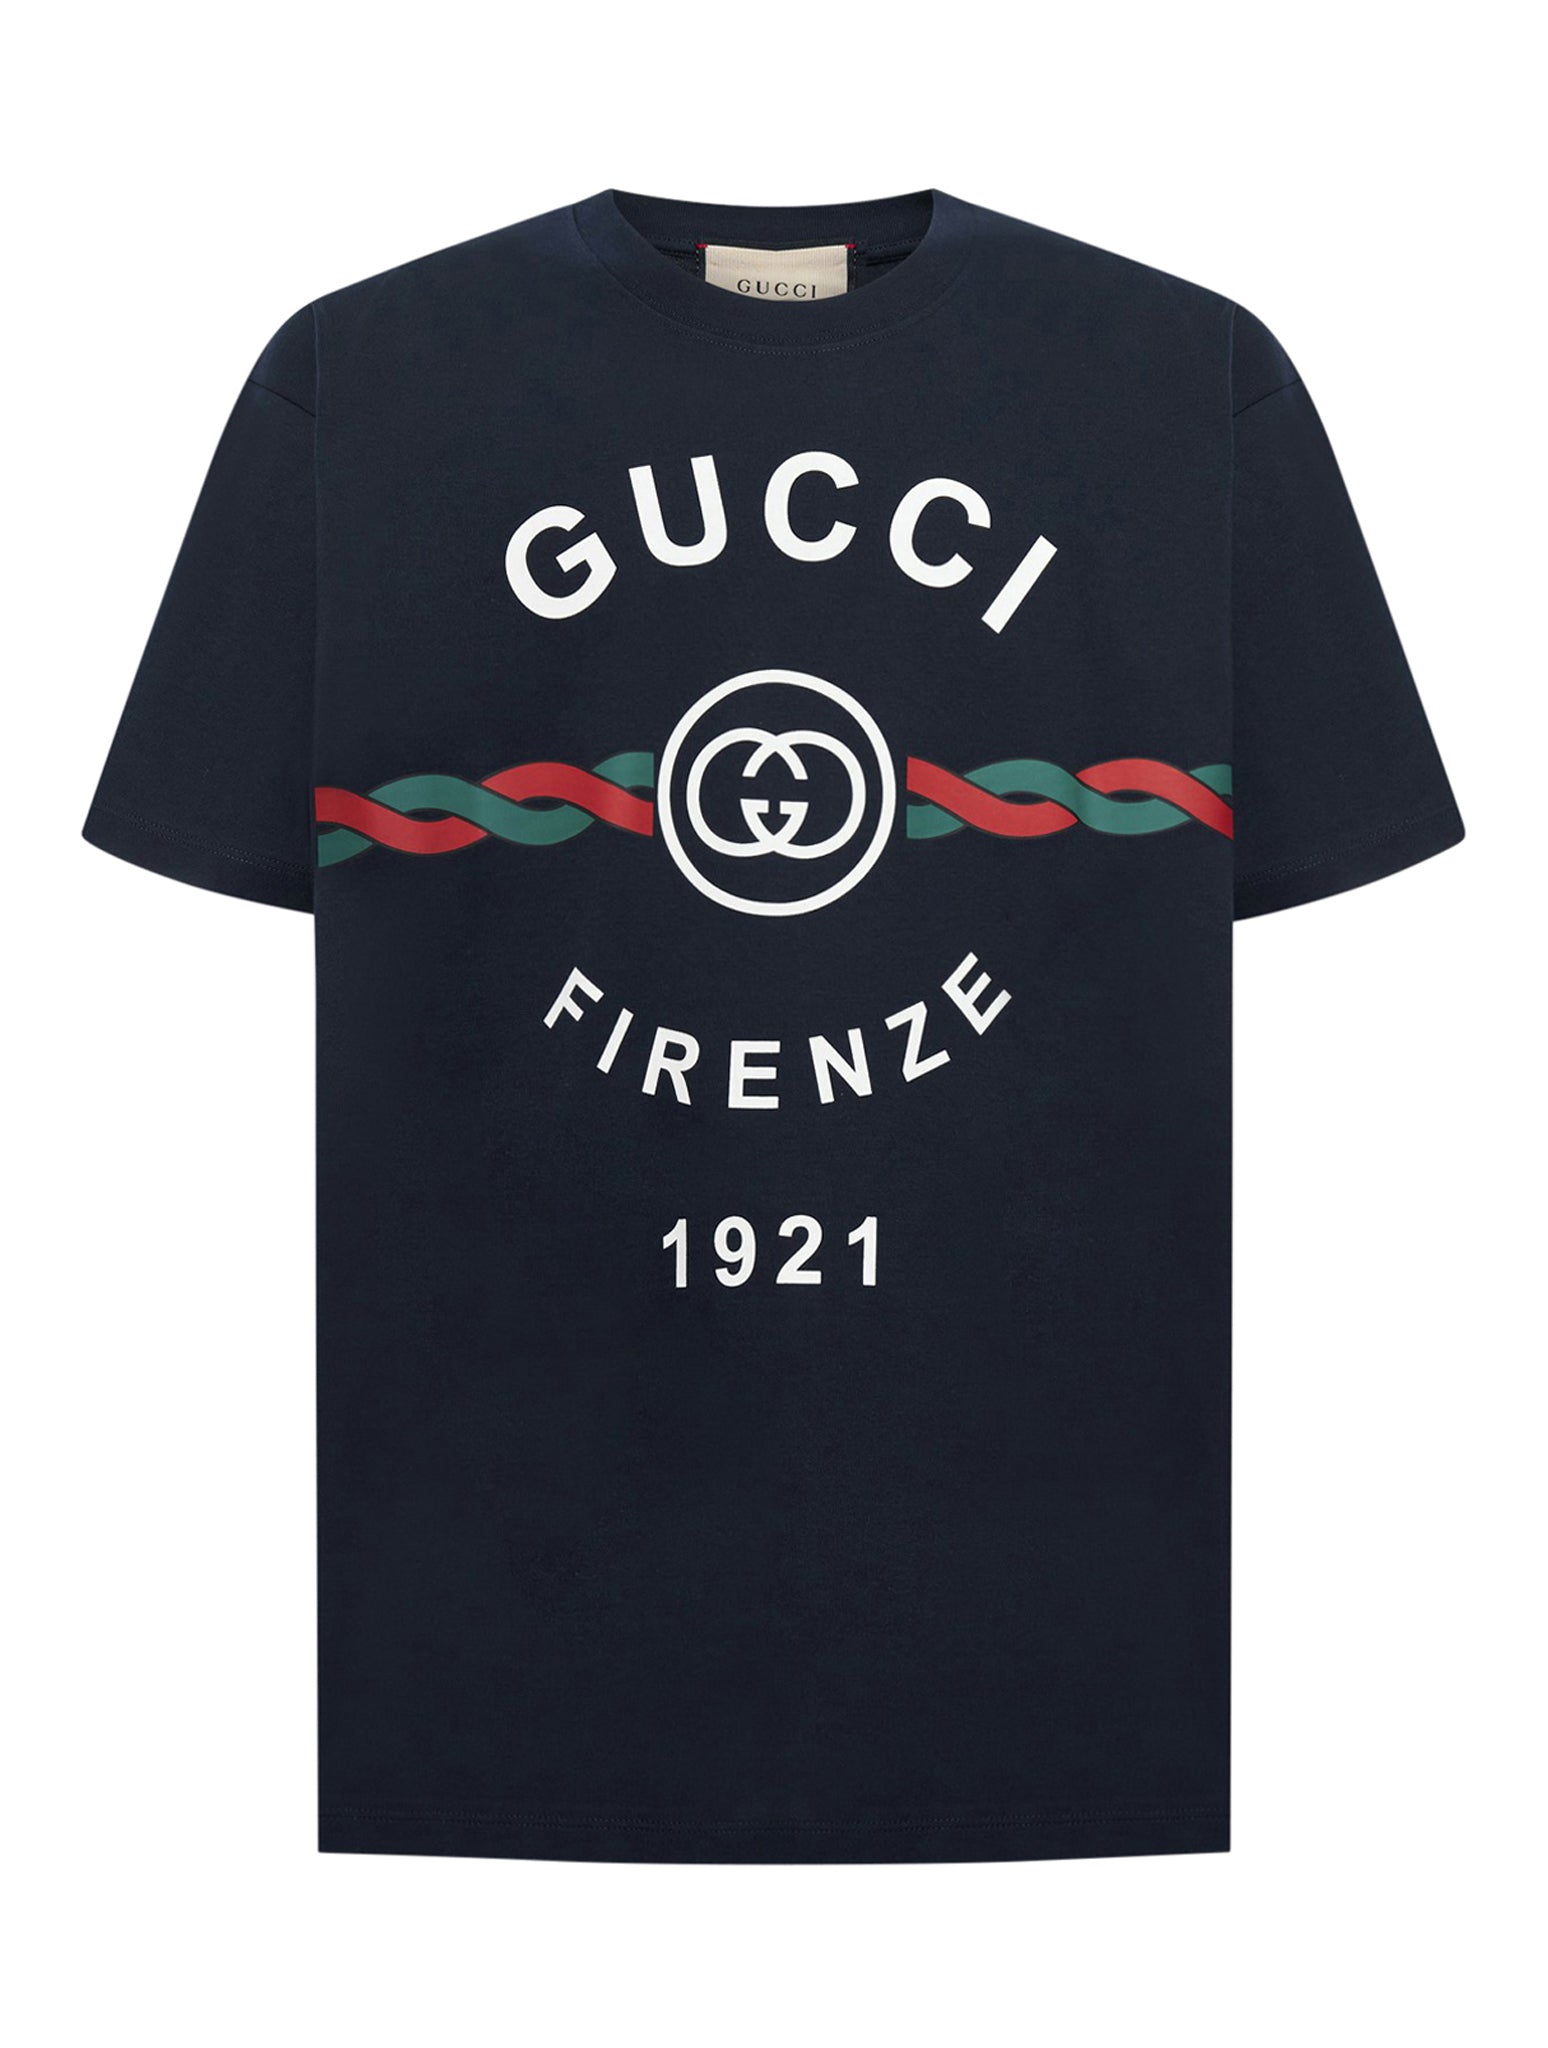 "Gucci Firenze 1921" cotton jersey T-shirt